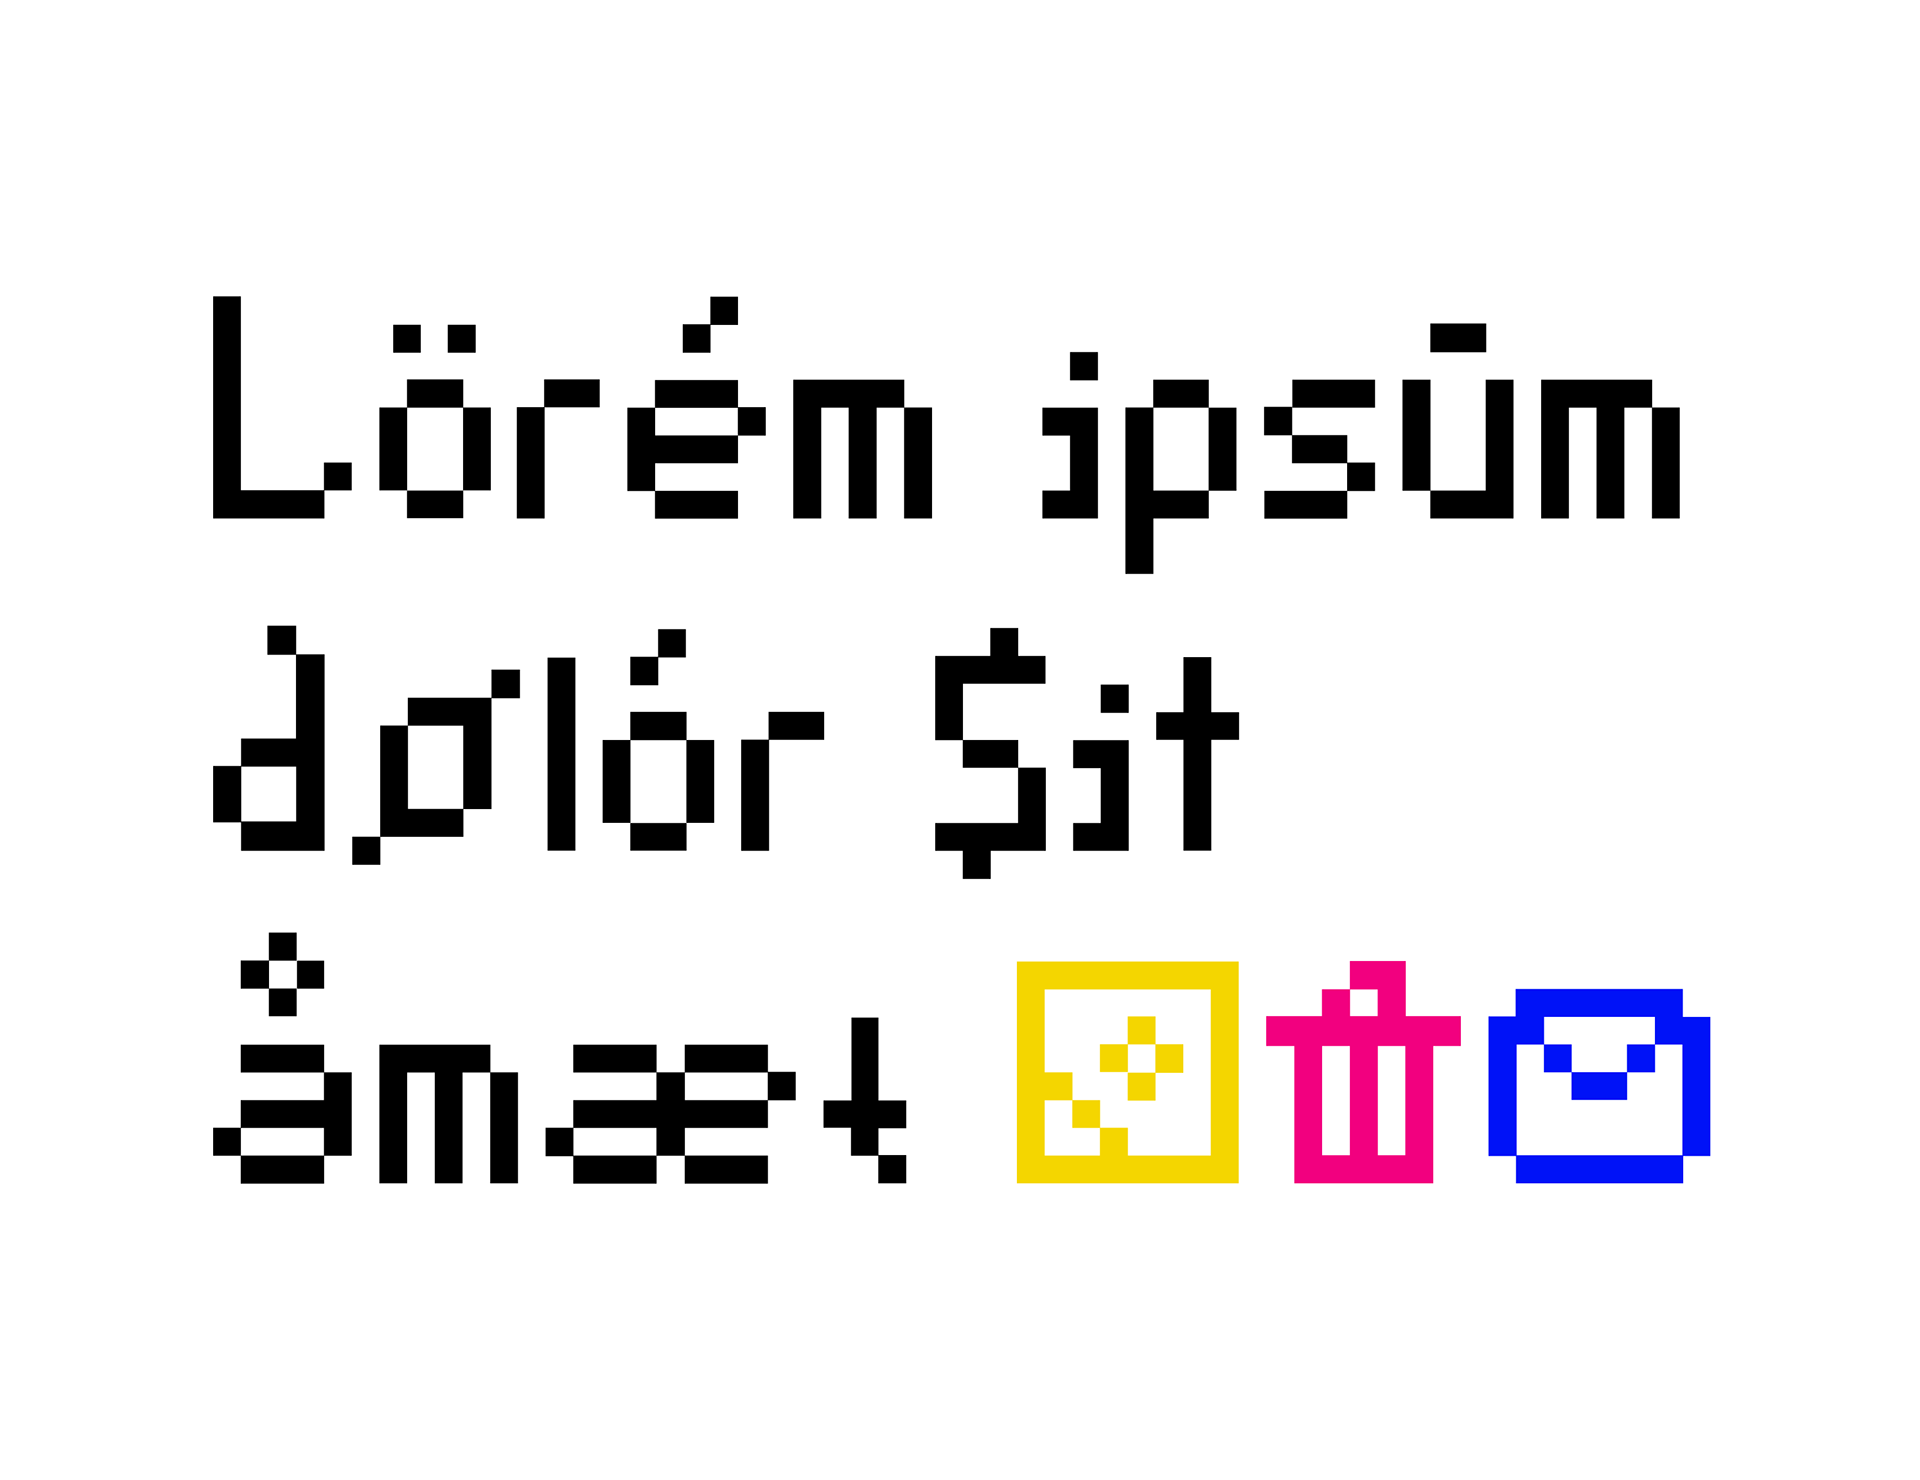 SK Eliz Free Pixel Font - bitmap-fonts